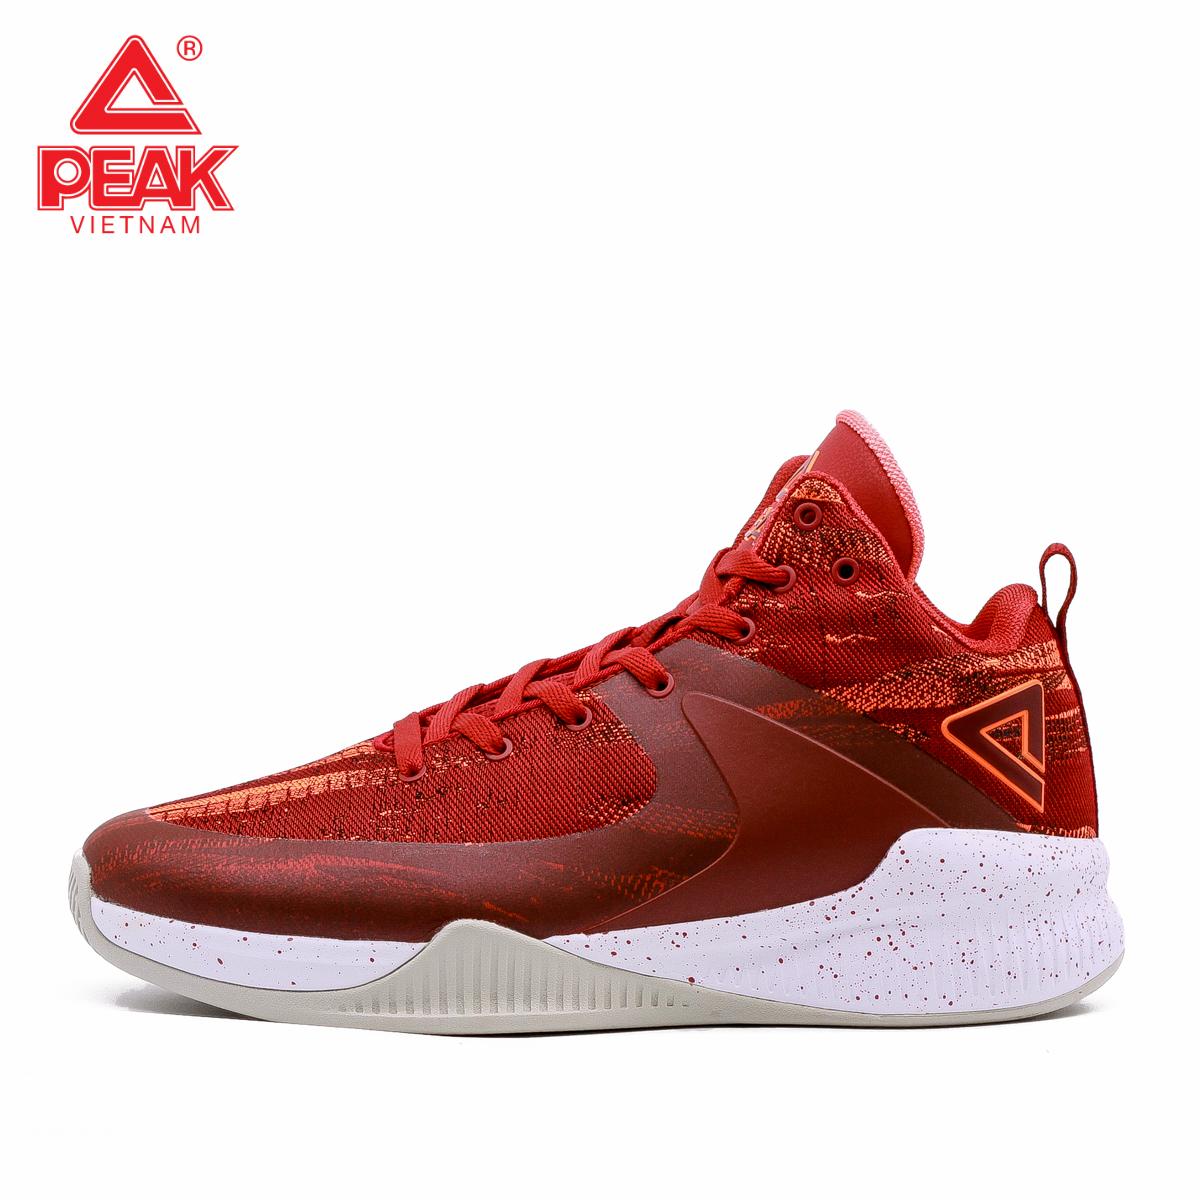 Giày bóng rổ PEAK Rising Star 2018 E83061A – Đỏ Cam